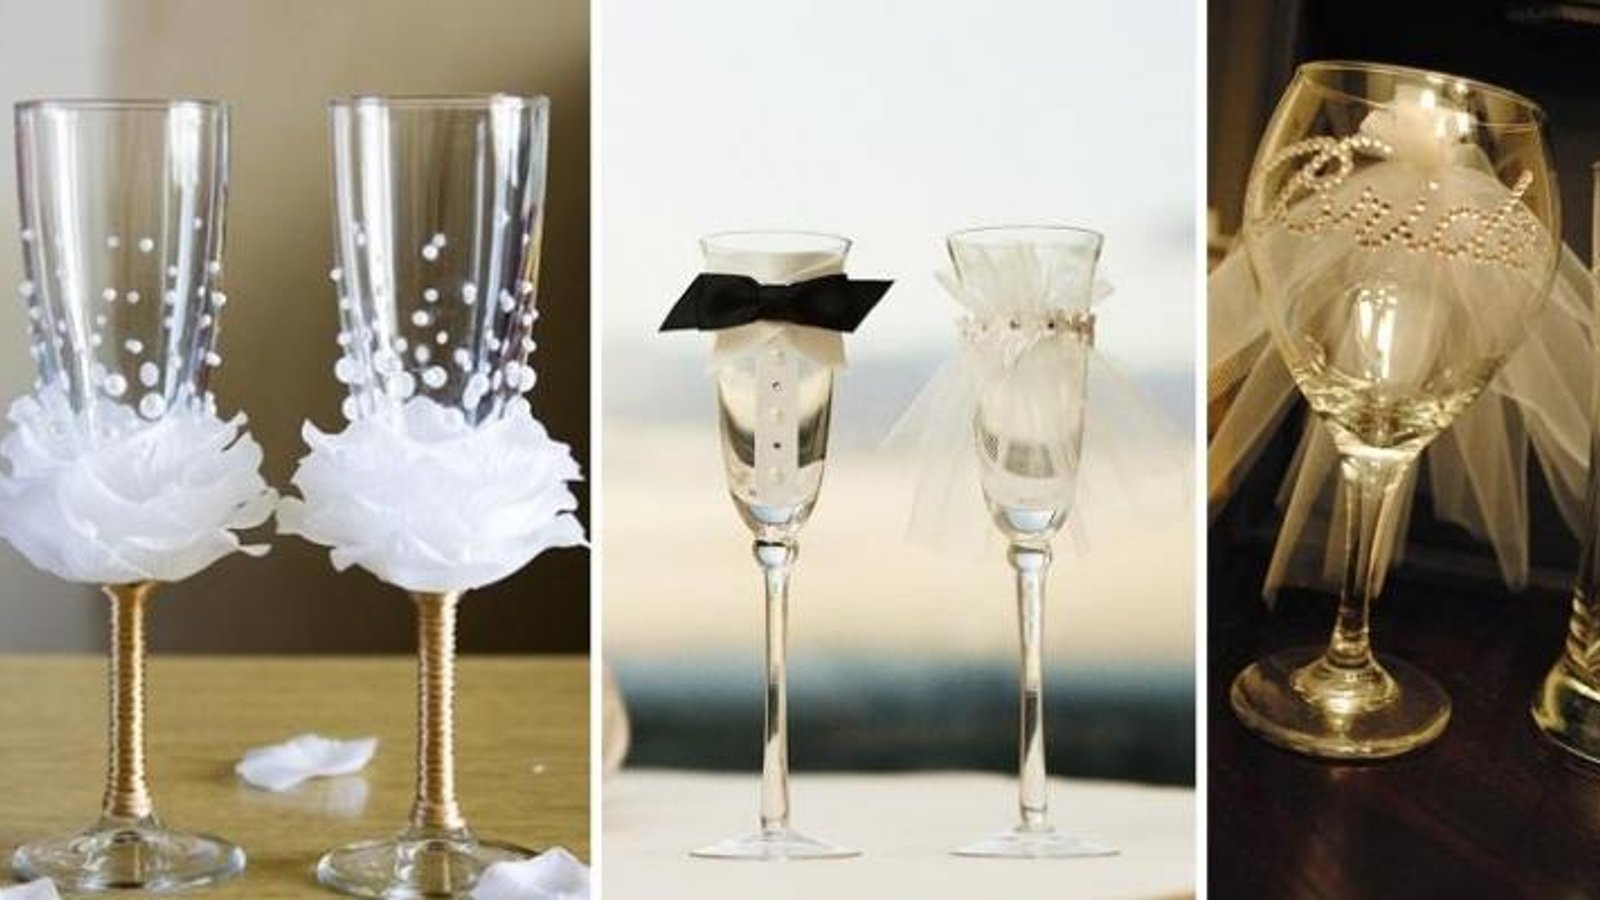 Comment décorer des flûtes à champagne! 3 idées mariage! 